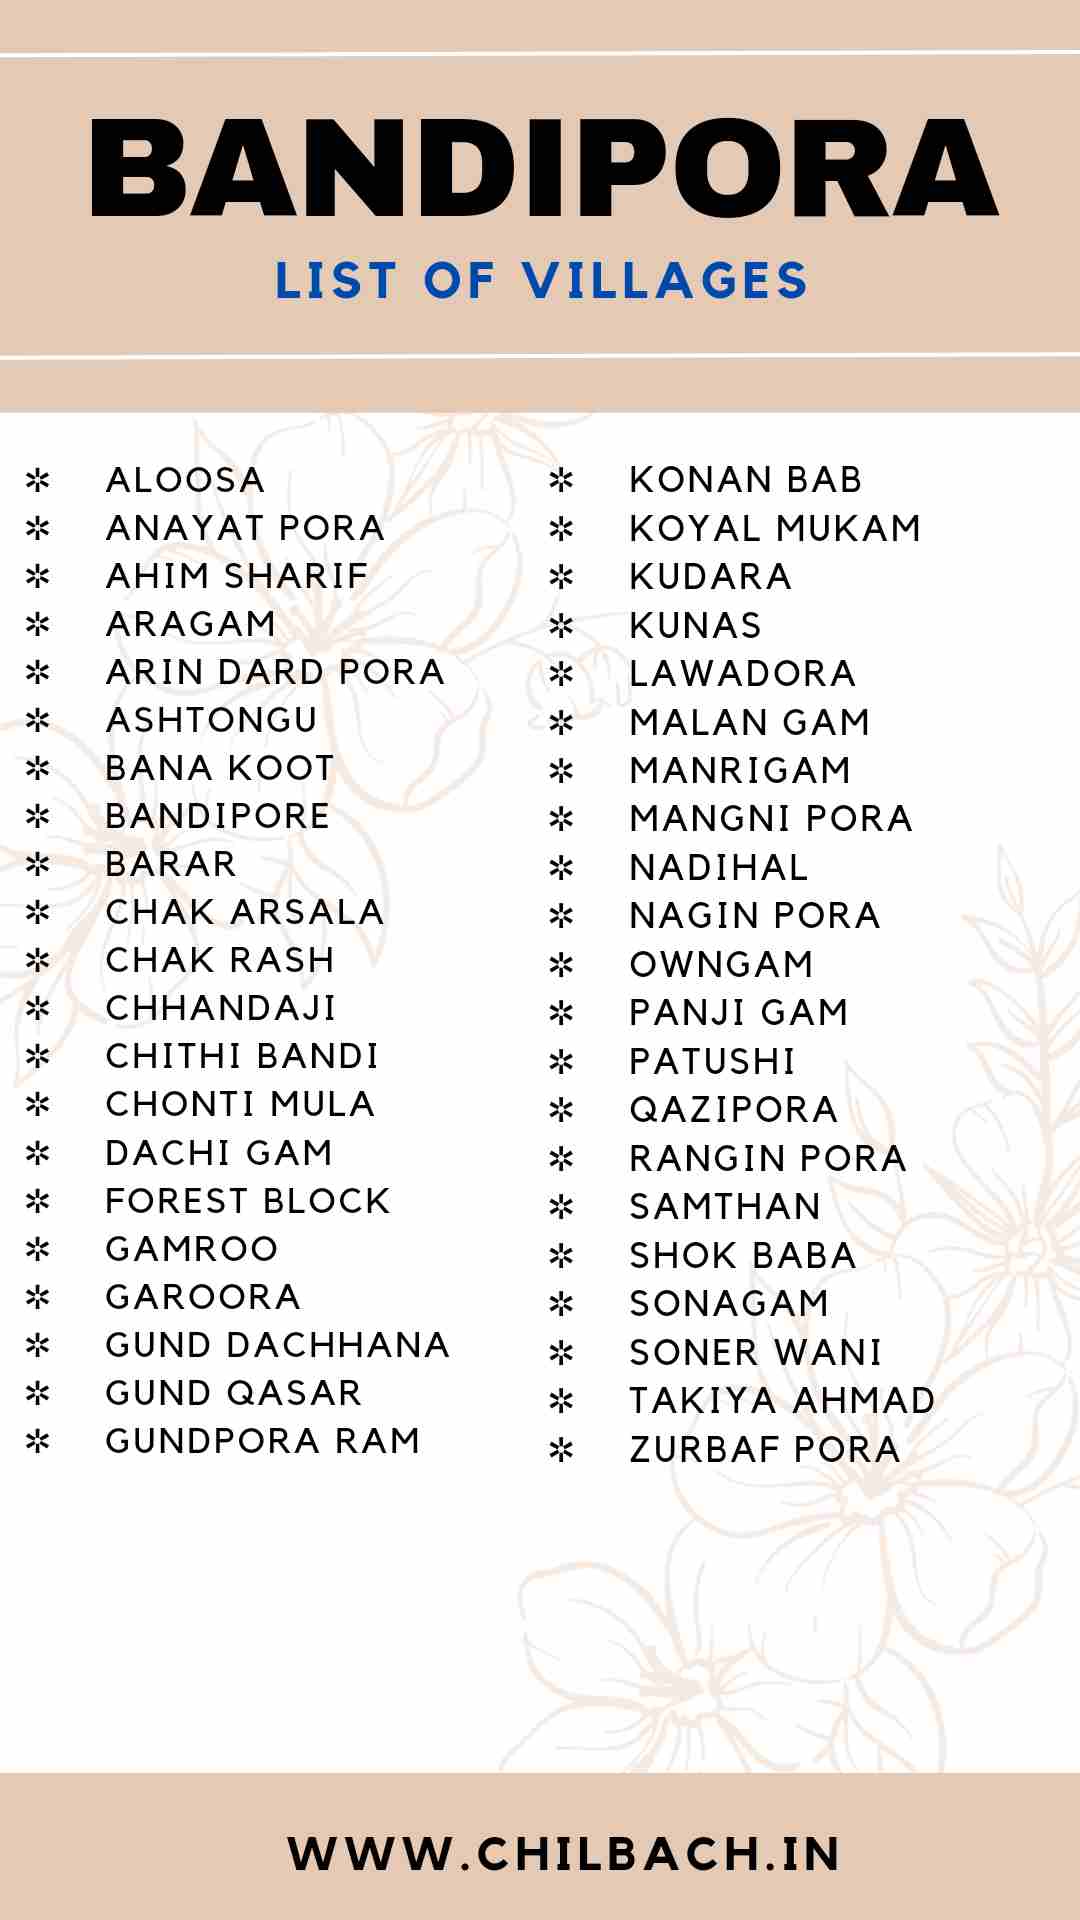 List of Villages in Bandipora District